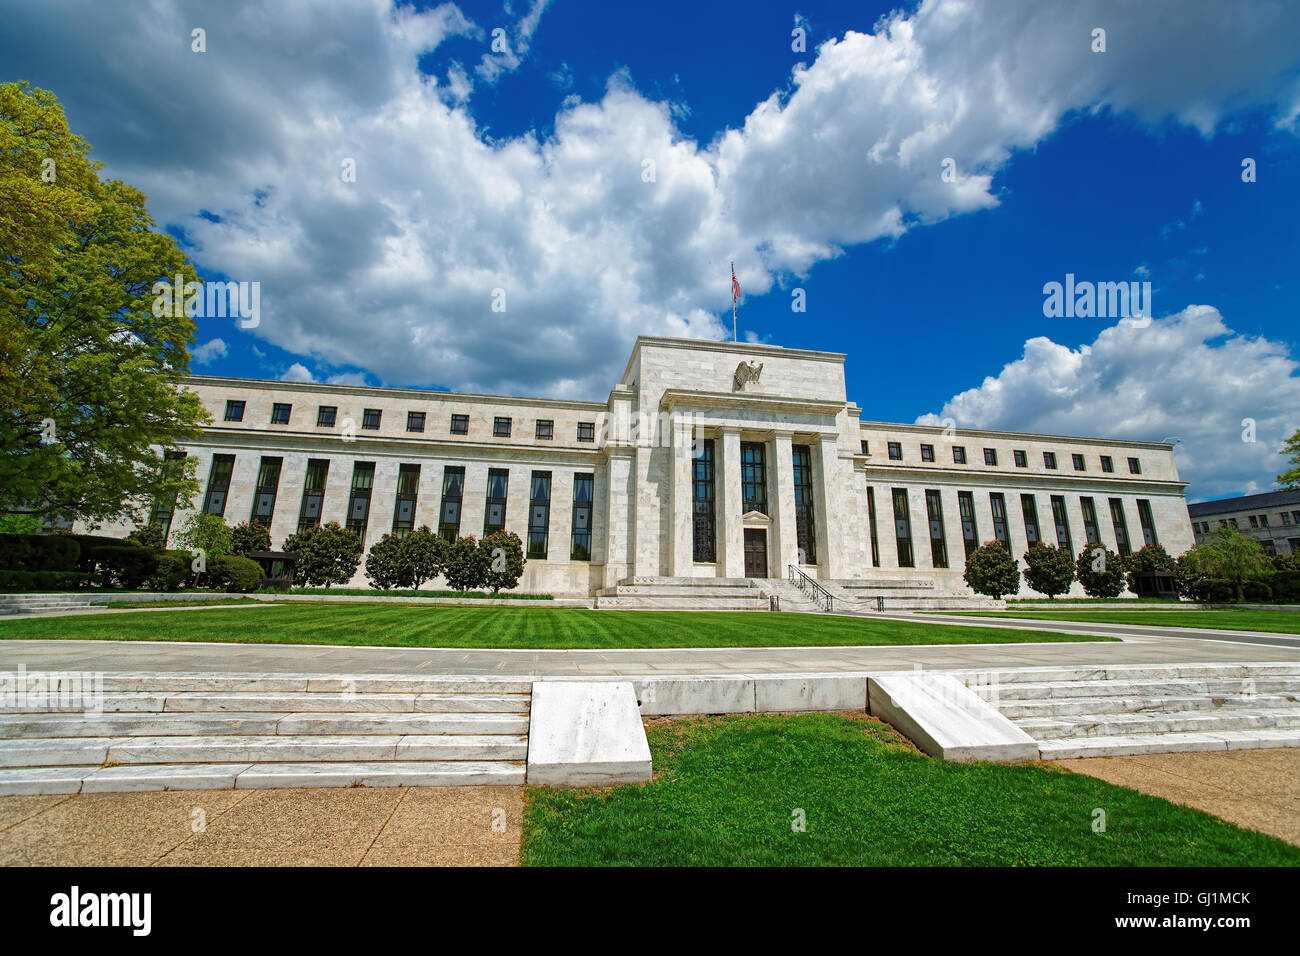 Marriner S. Eccles, Federal Reserve Board Building situé à Washington D.C., USA. Le bâtiment a été achevé en 1937. L'architecte du bâtiment a été Eccles Paul Philippe Cre. Banque D'Images